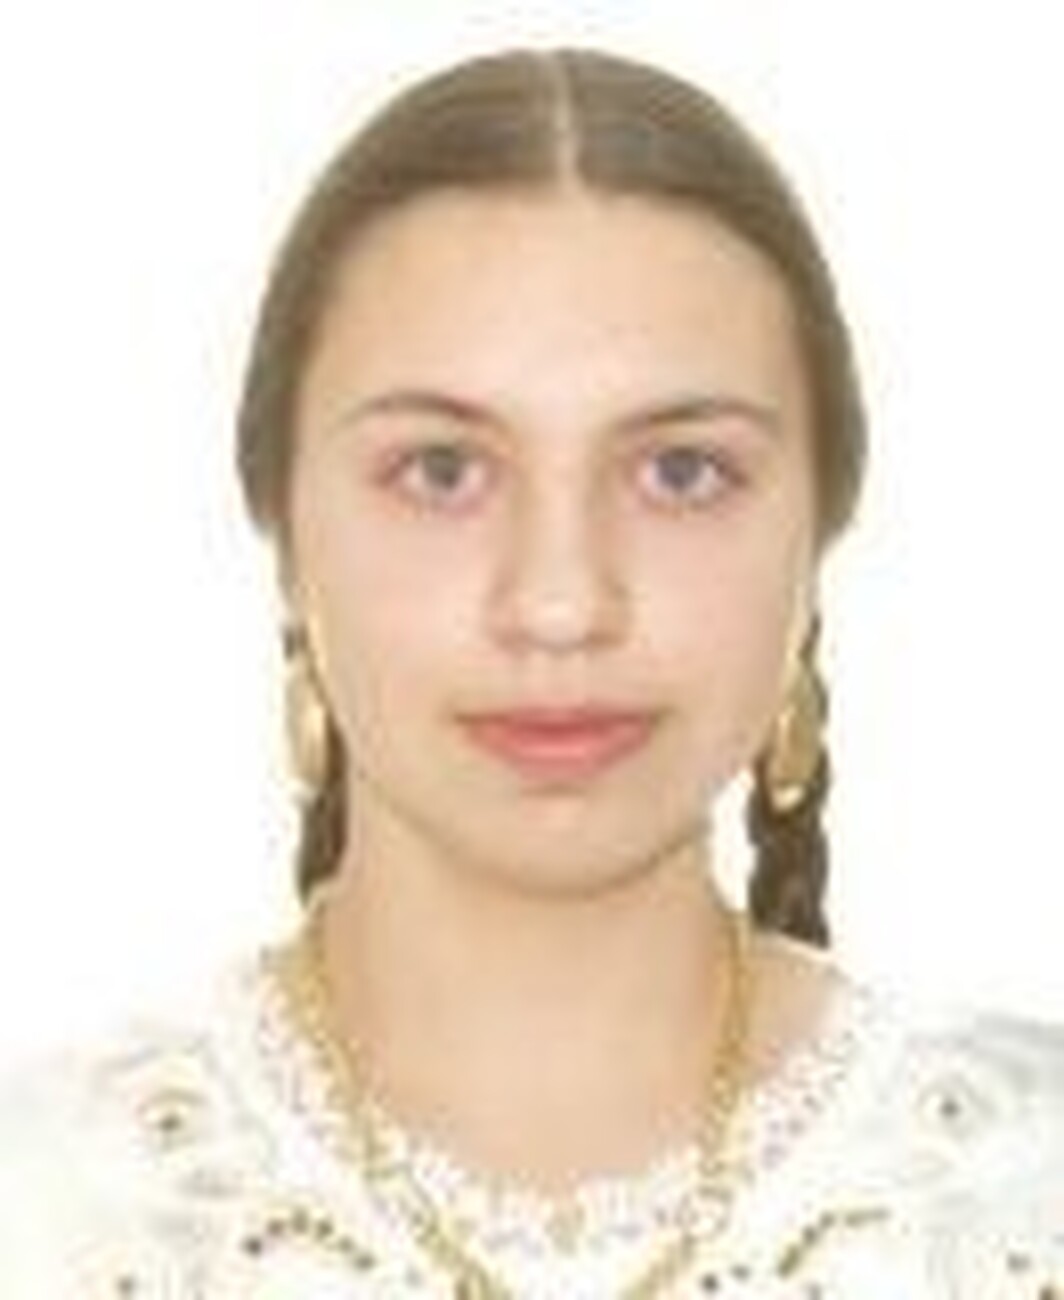 Fata răpită din Tălmaciu a fost găsită într-un sat din Brașov